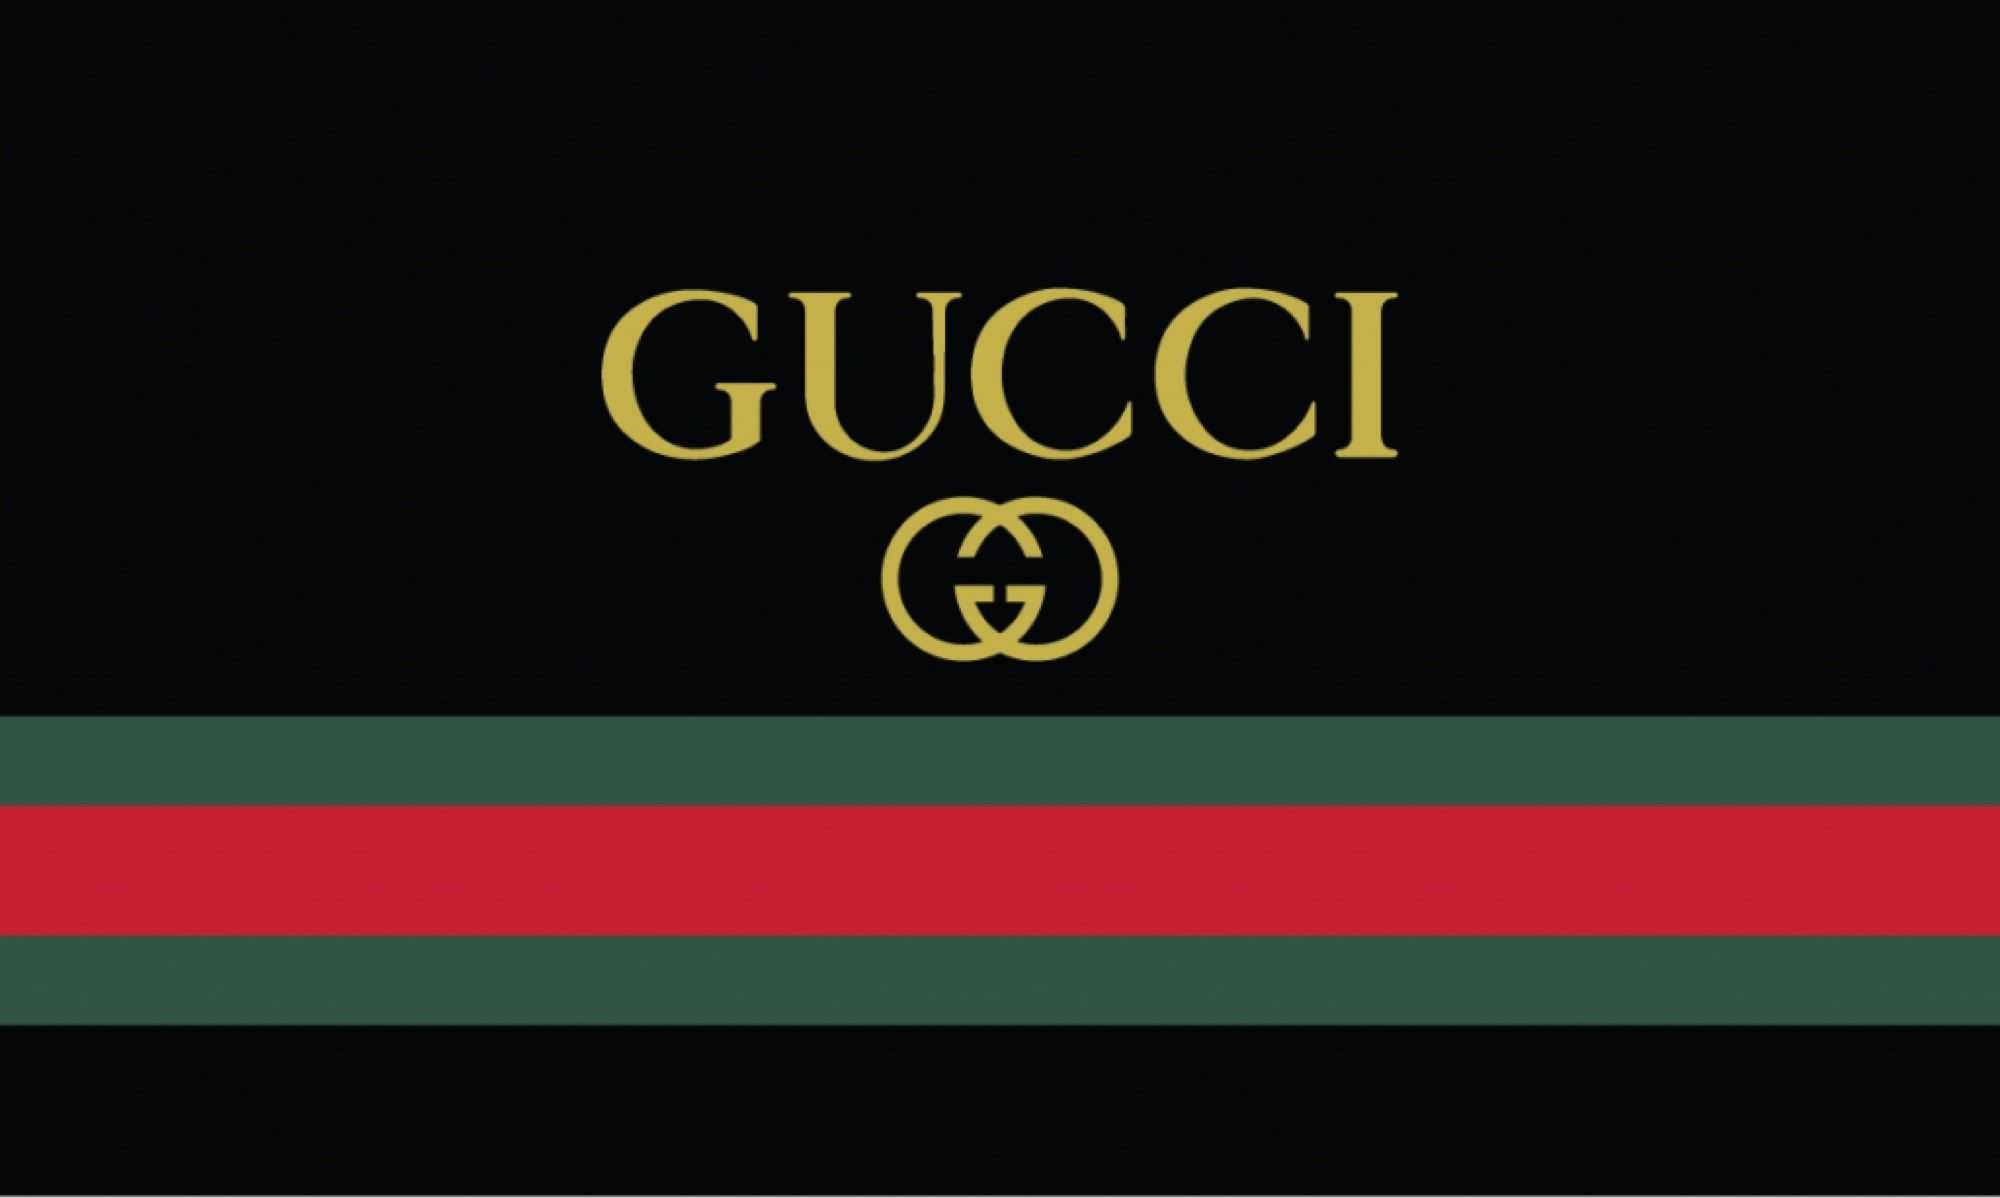 Gucci古奇dressage GG图案帆布女性购物袋素材-欧莱凯设计网